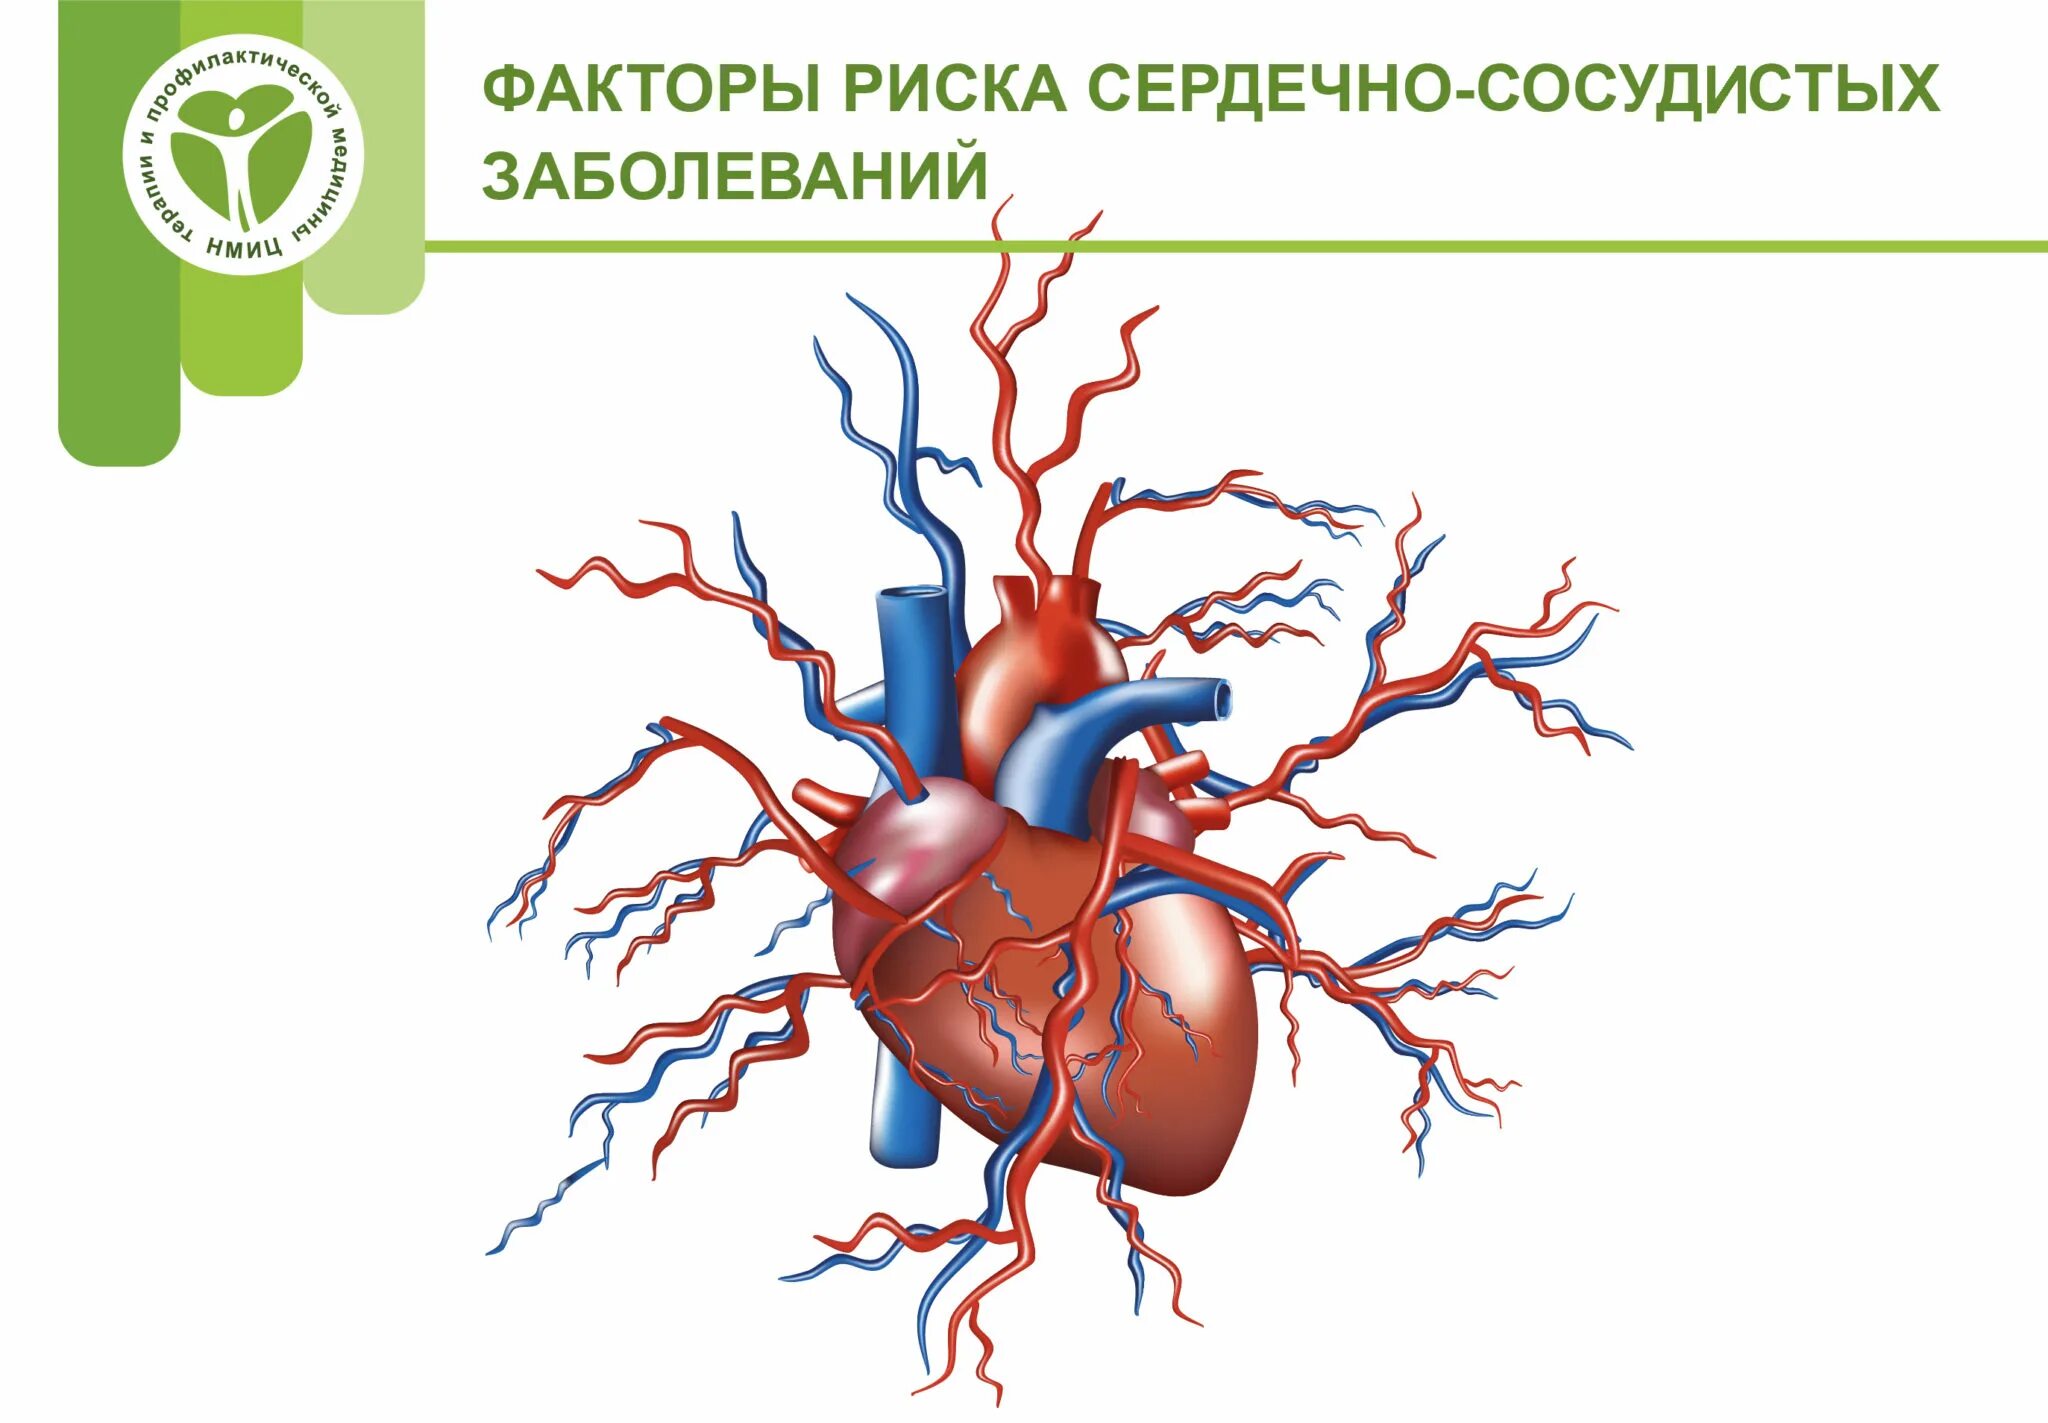 Факторы риска возникновения сердечно-сосудистых заболеваний. Факторы риска при ССС. Основные факторы риска заболевания ССС. Факторы риска формирования сердечно-сосудистой патологии. Сердечный ковид